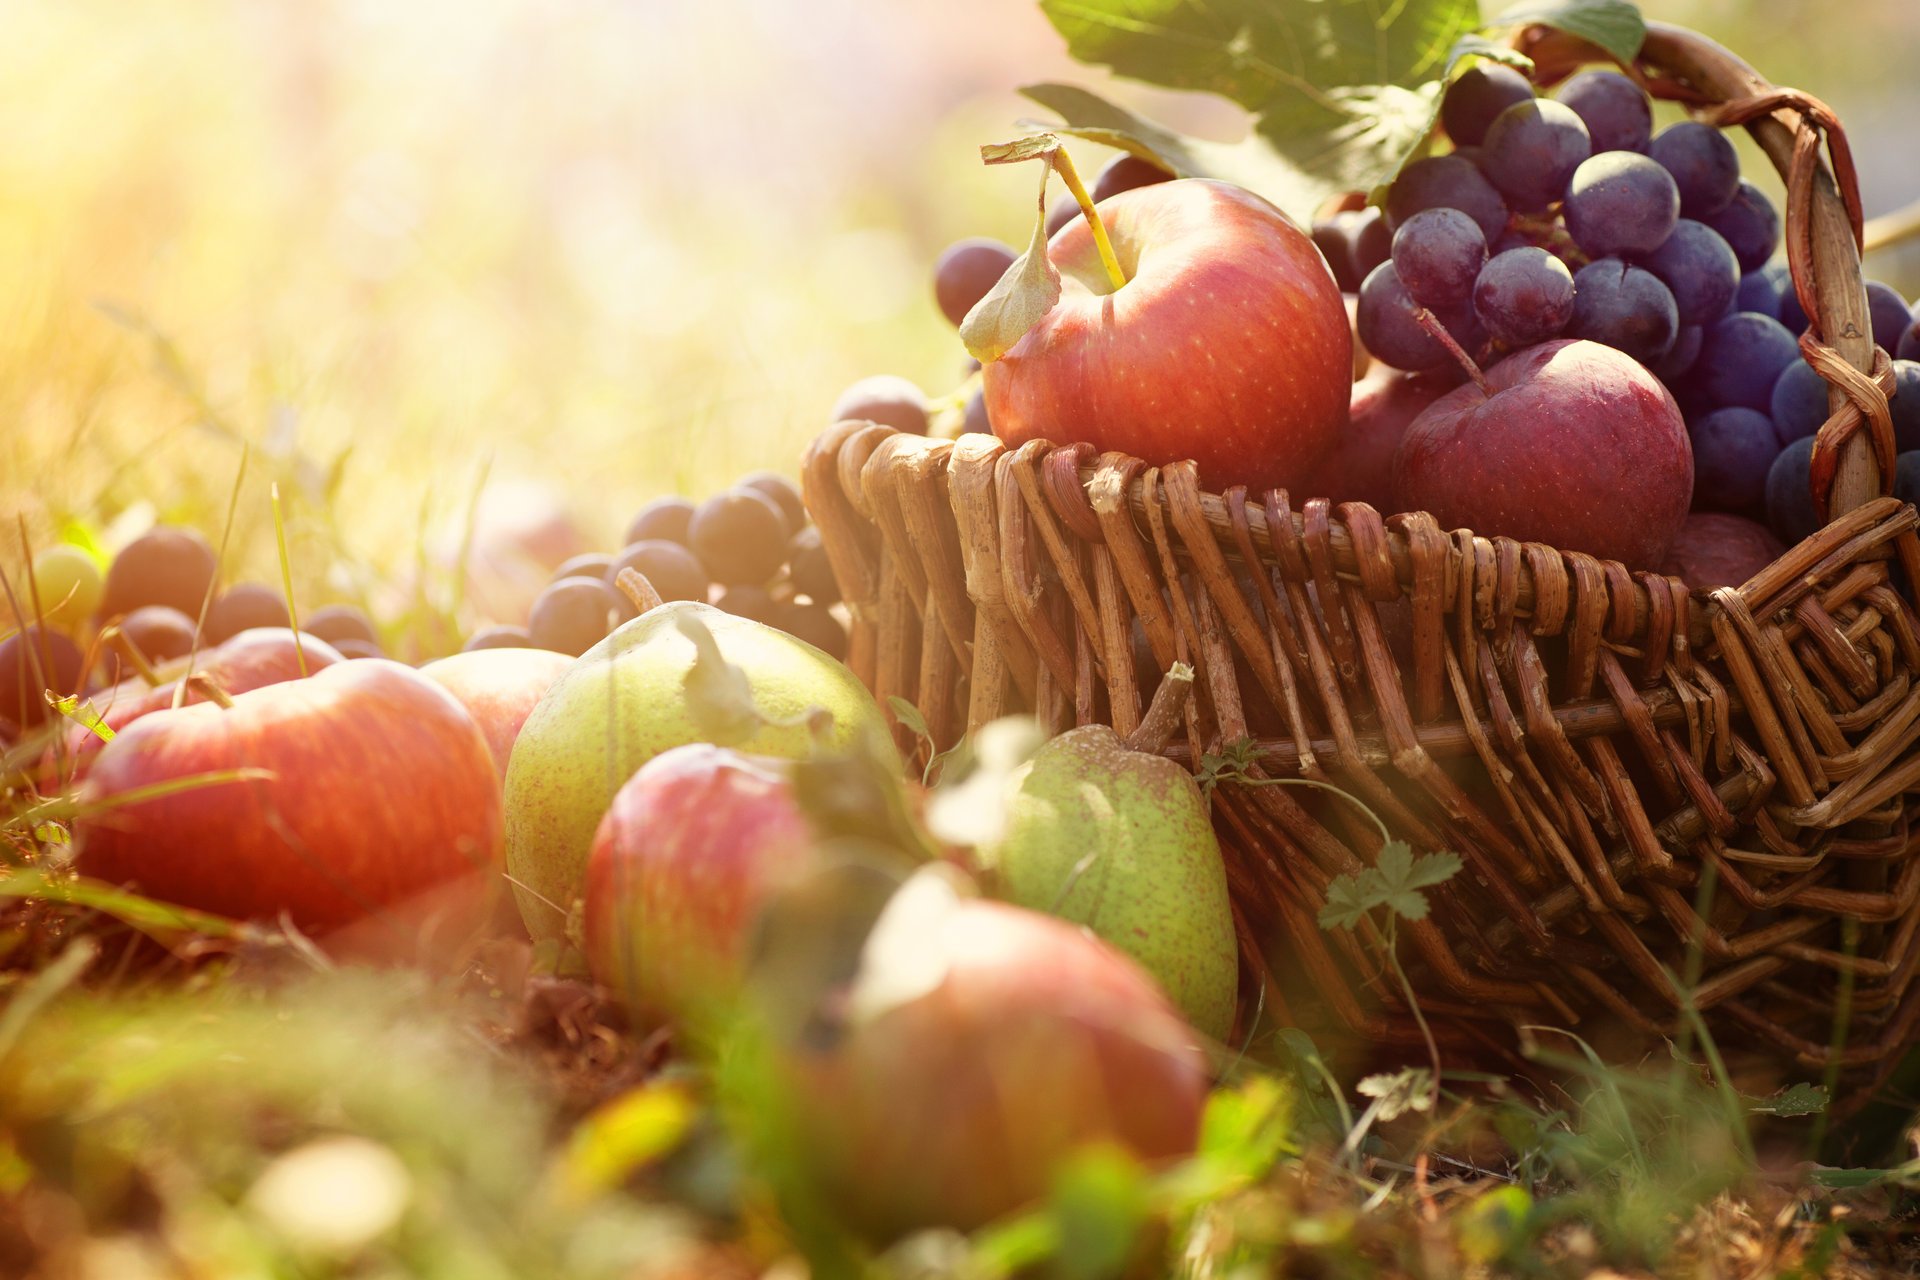 Фруктовая корзина яблок и винограда на траве